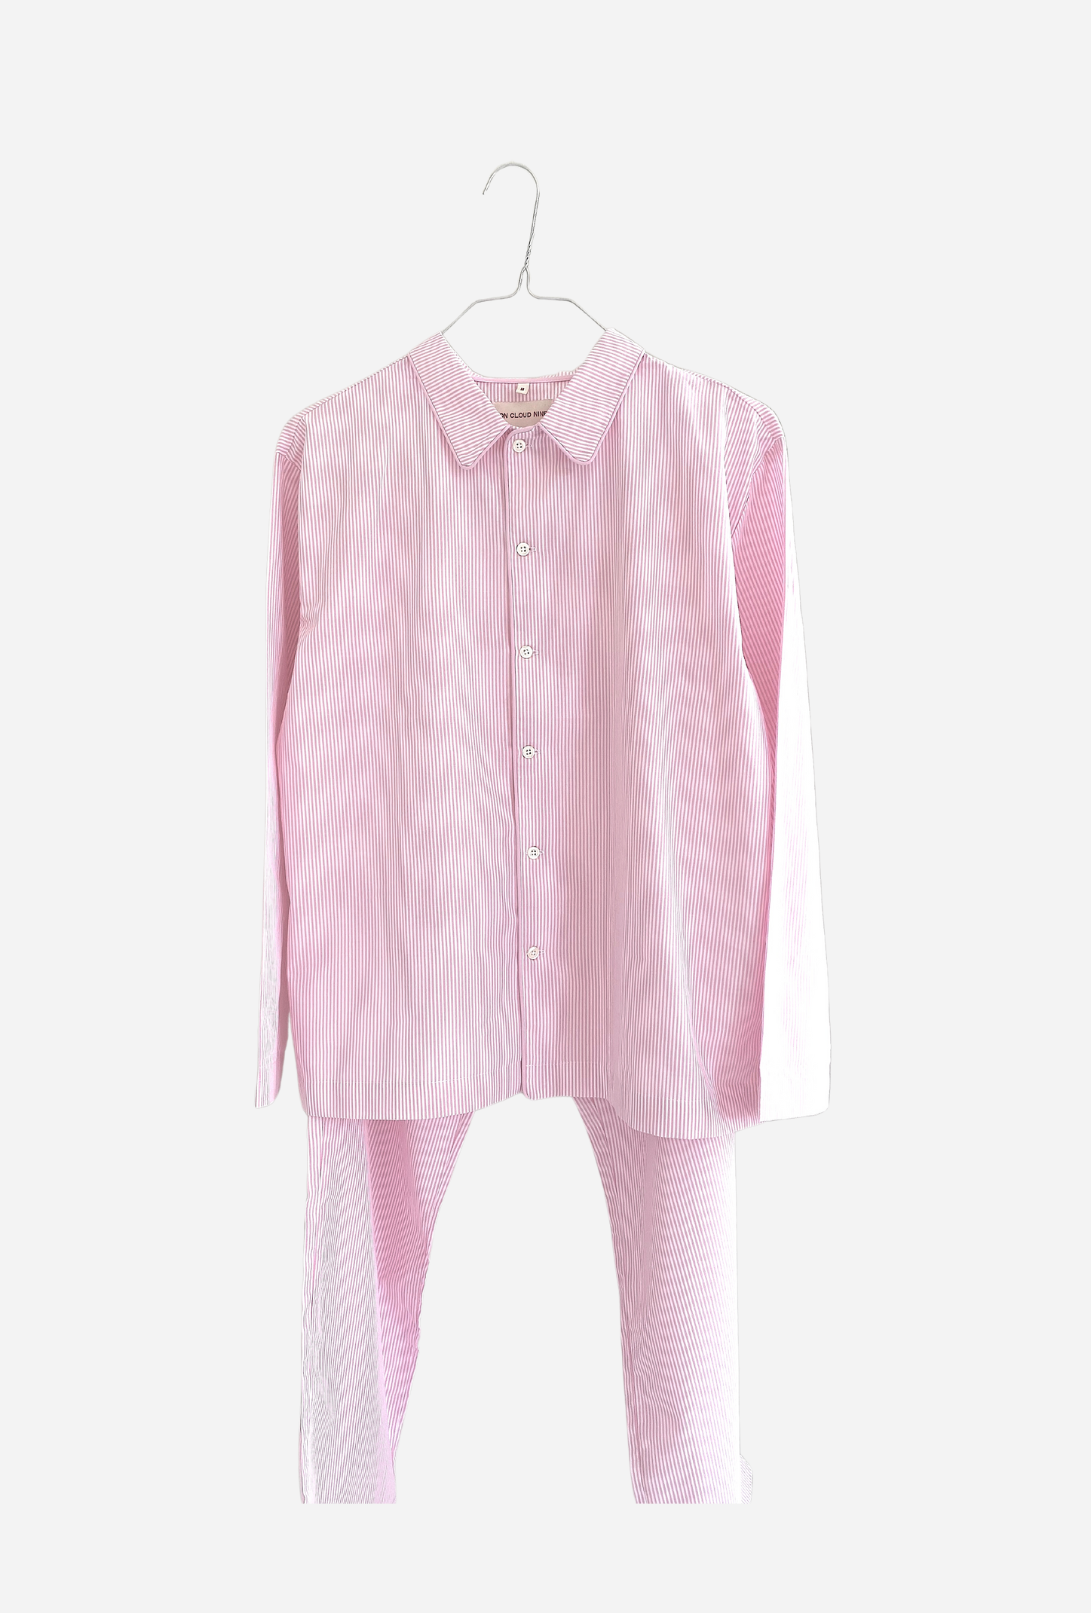 On Cloud Nine • Pyjamas lyserød og hvid stribet